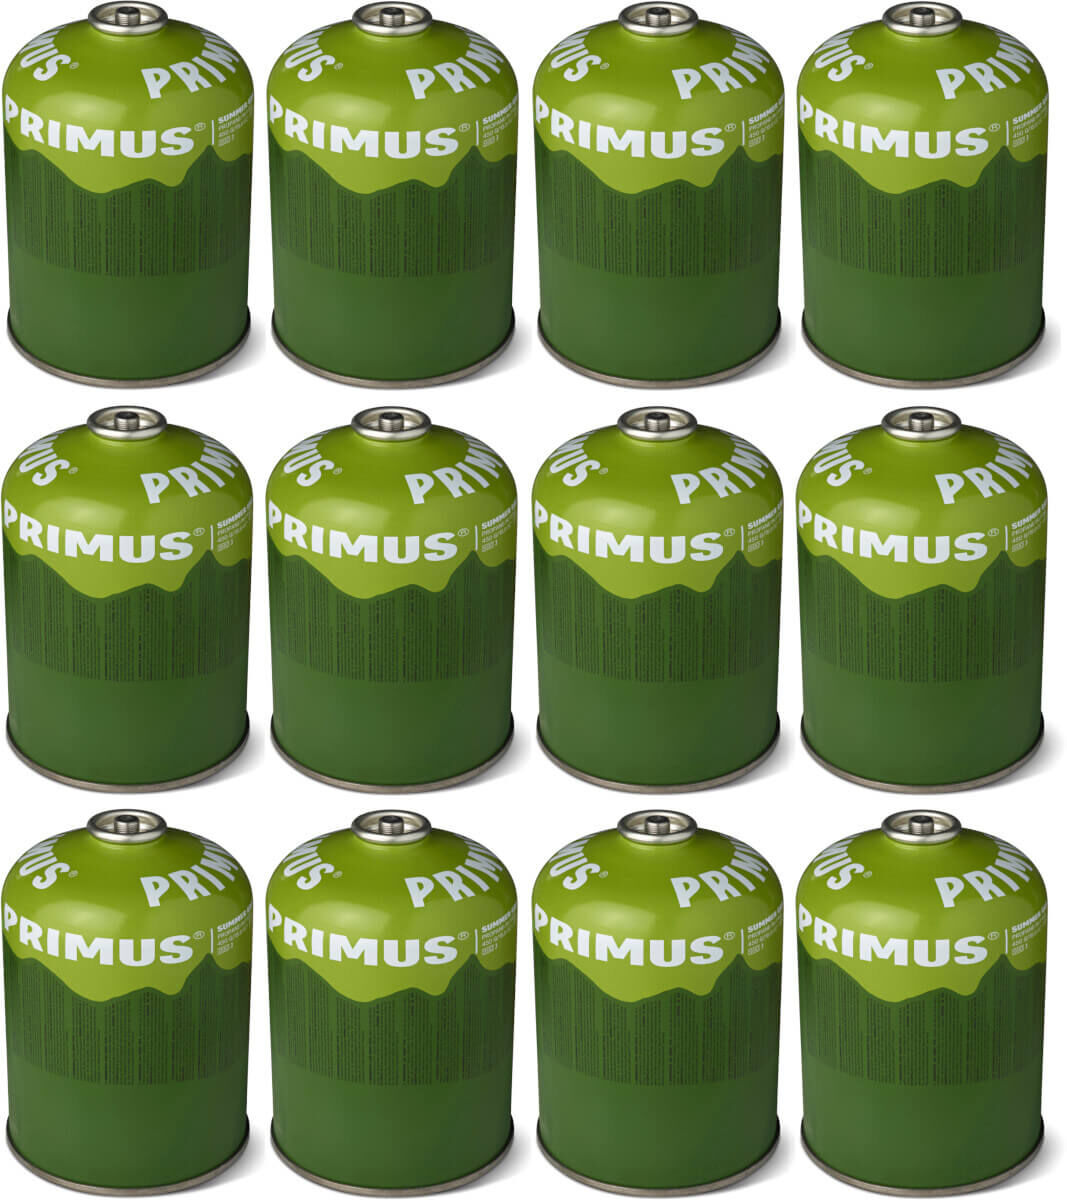 12x PRIMUS Summer Gas Ventilgaskartusche mit selbstschließendem Ventil - 450g (PGS450)